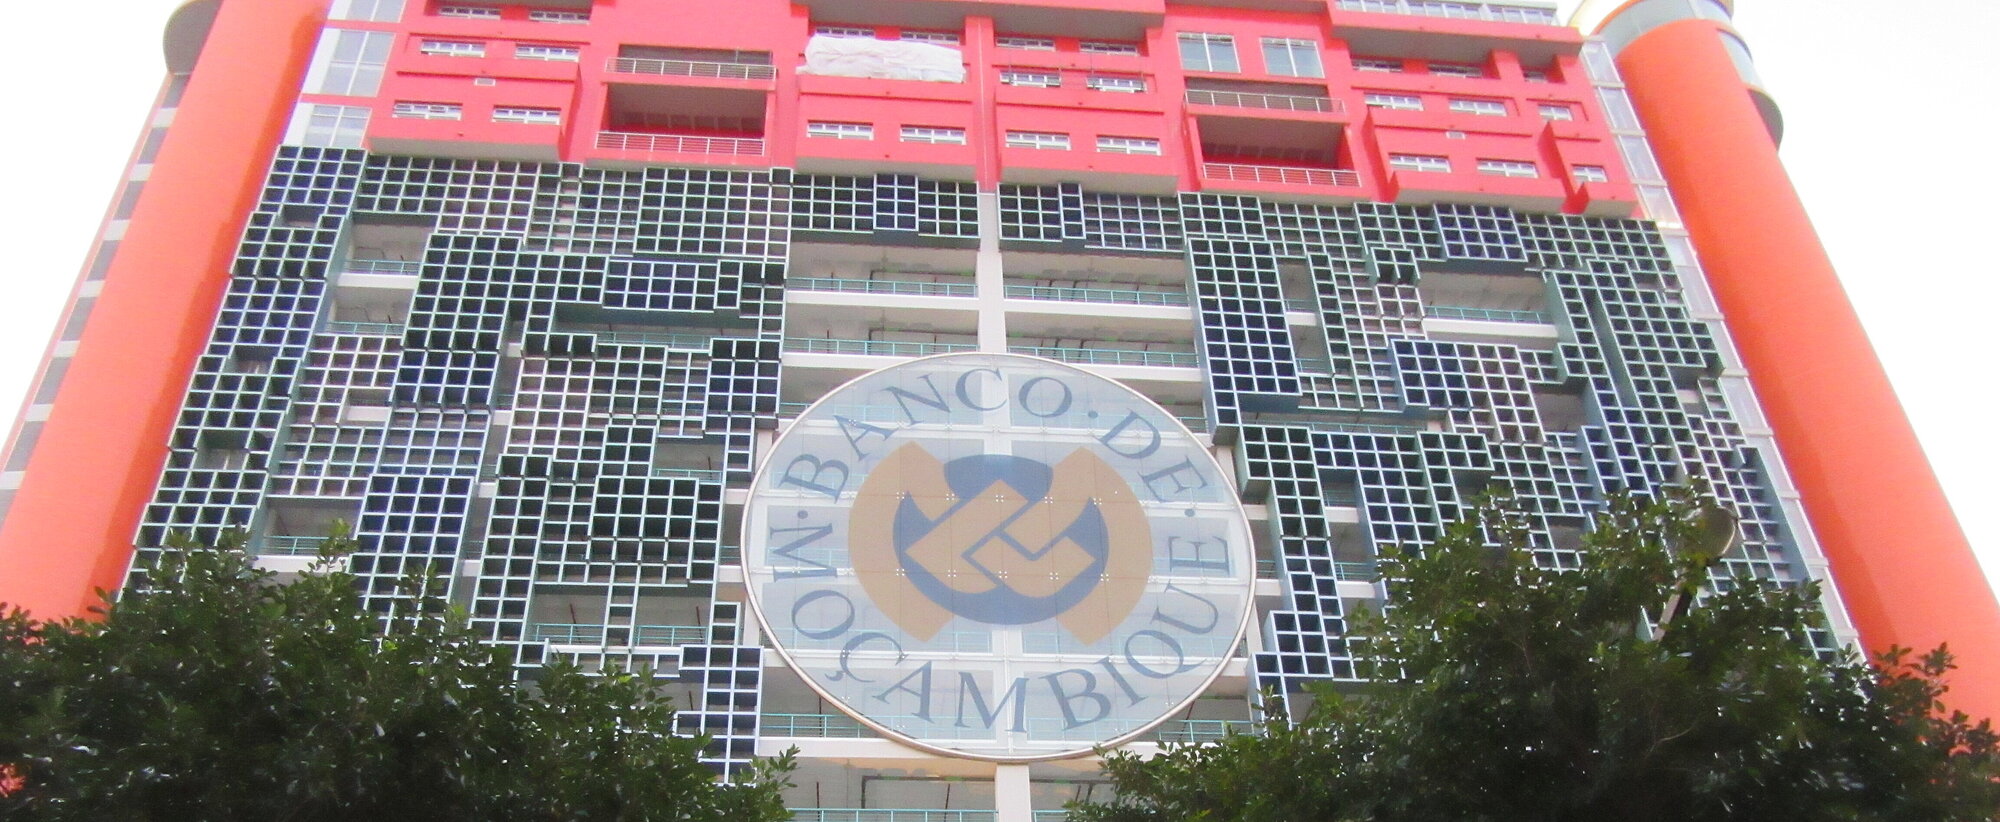 Gebäude der Bank de Maosambik mit Logo in der Mitte und 2 Bäumen links und rechts unten